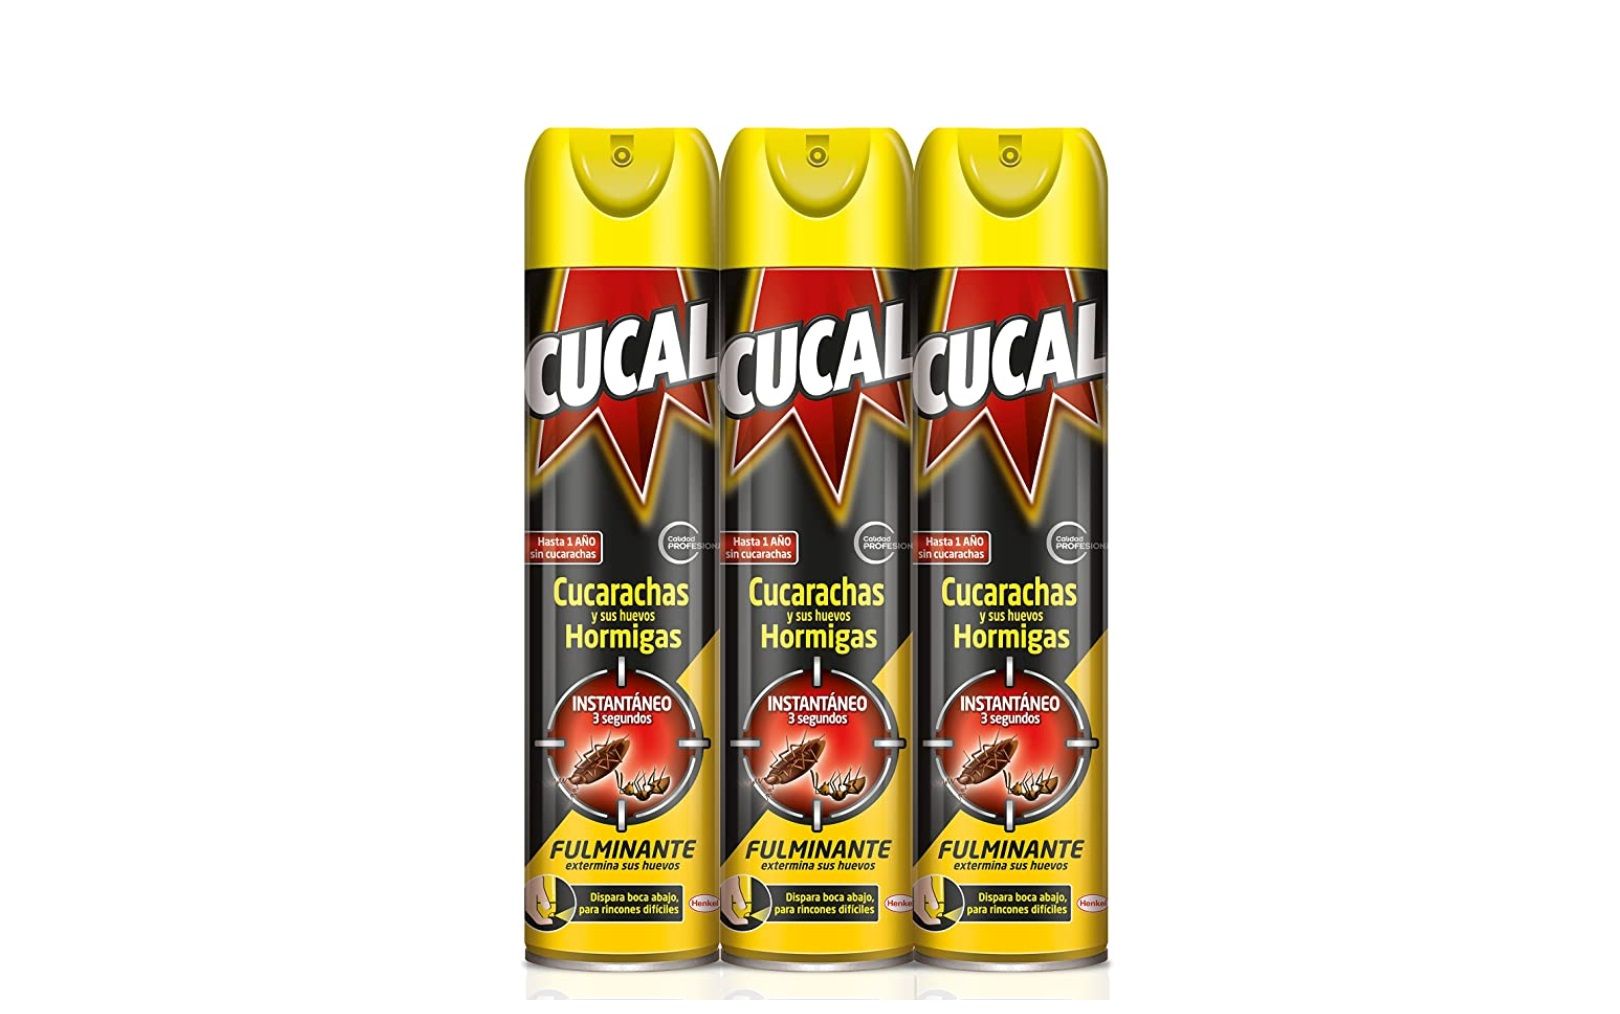 ¡Chollo! Pack de 3 envases de Cucal Aerosol Instant por sólo 8,84€ al tramitar el pedido